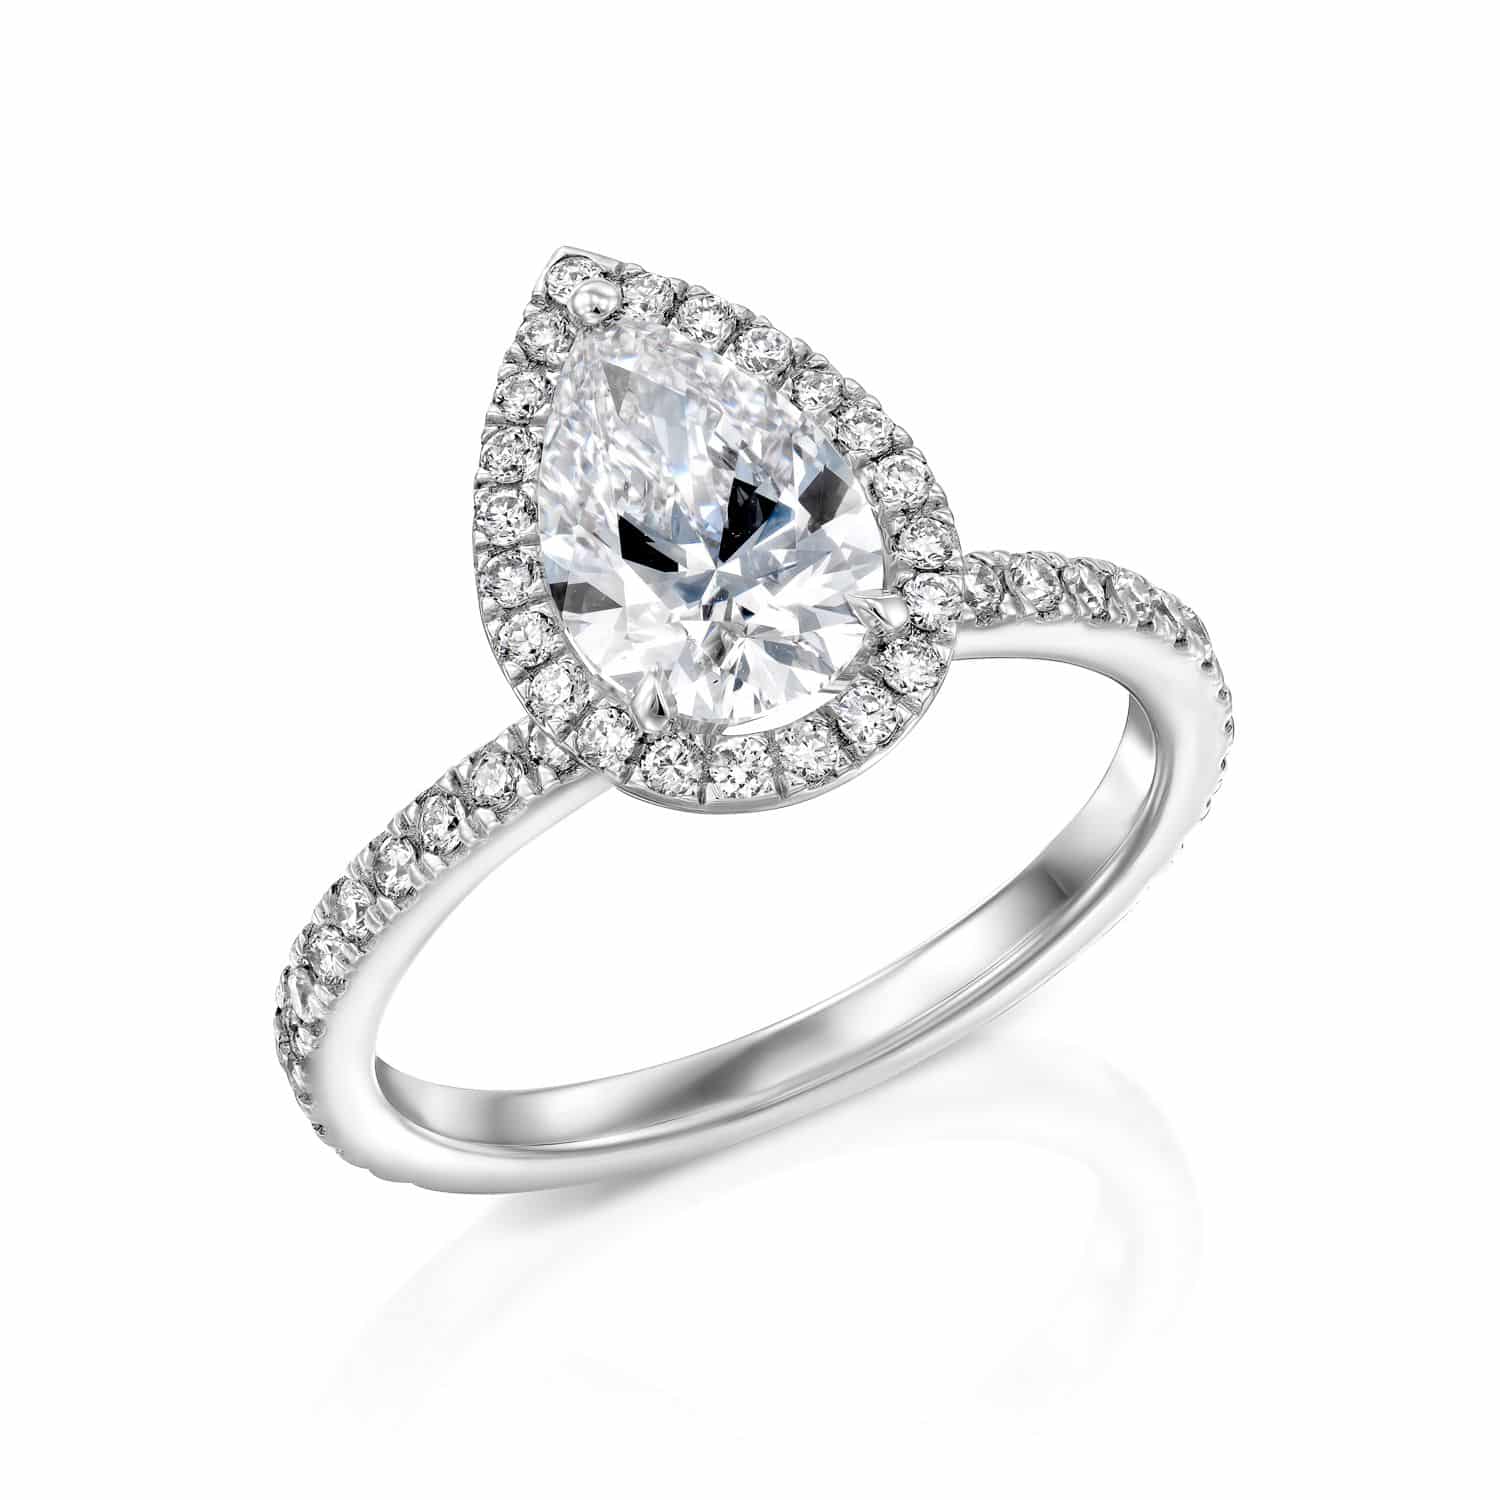 טבעת אירוסין בצורת אגס עם יהלומים משובצים בפאב, משובצת בשיבוץ זהב לבן או פלטינה, על רקע לבן.